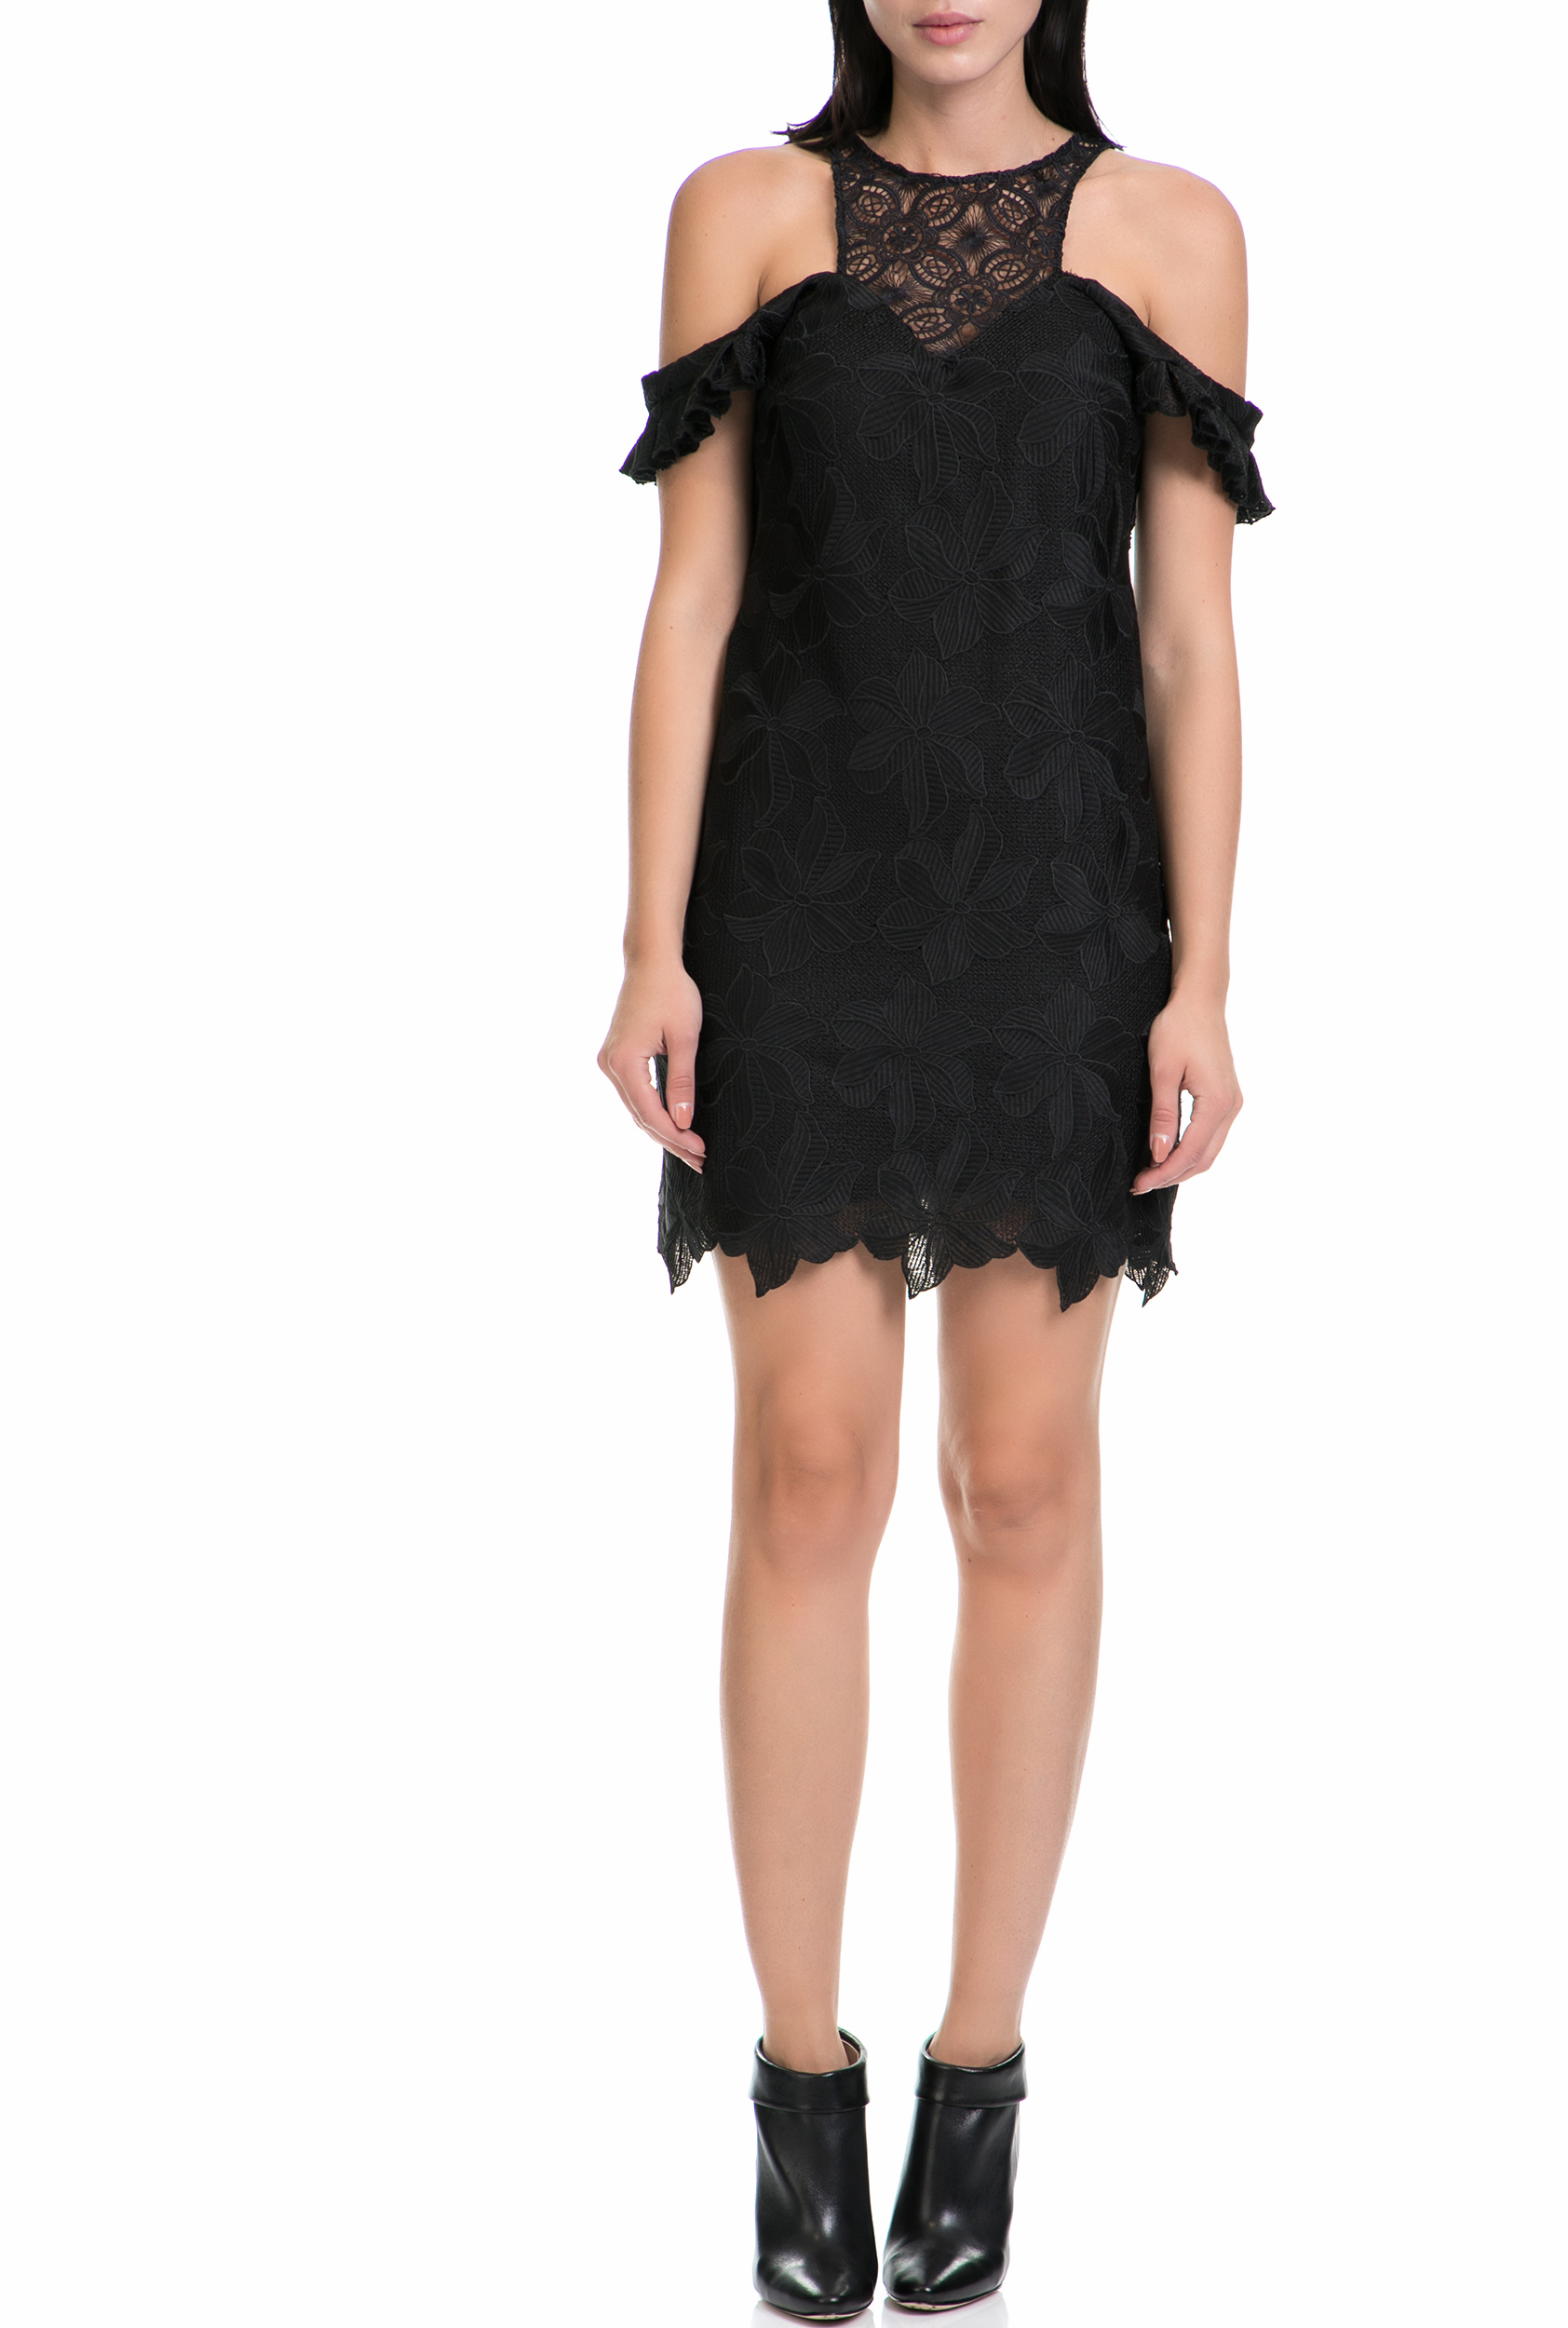 Γυναικεία/Ρούχα/Φορέματα/Μίνι GUESS - Γυναικείο φόρεμα SHERIE GUESS μαύρο